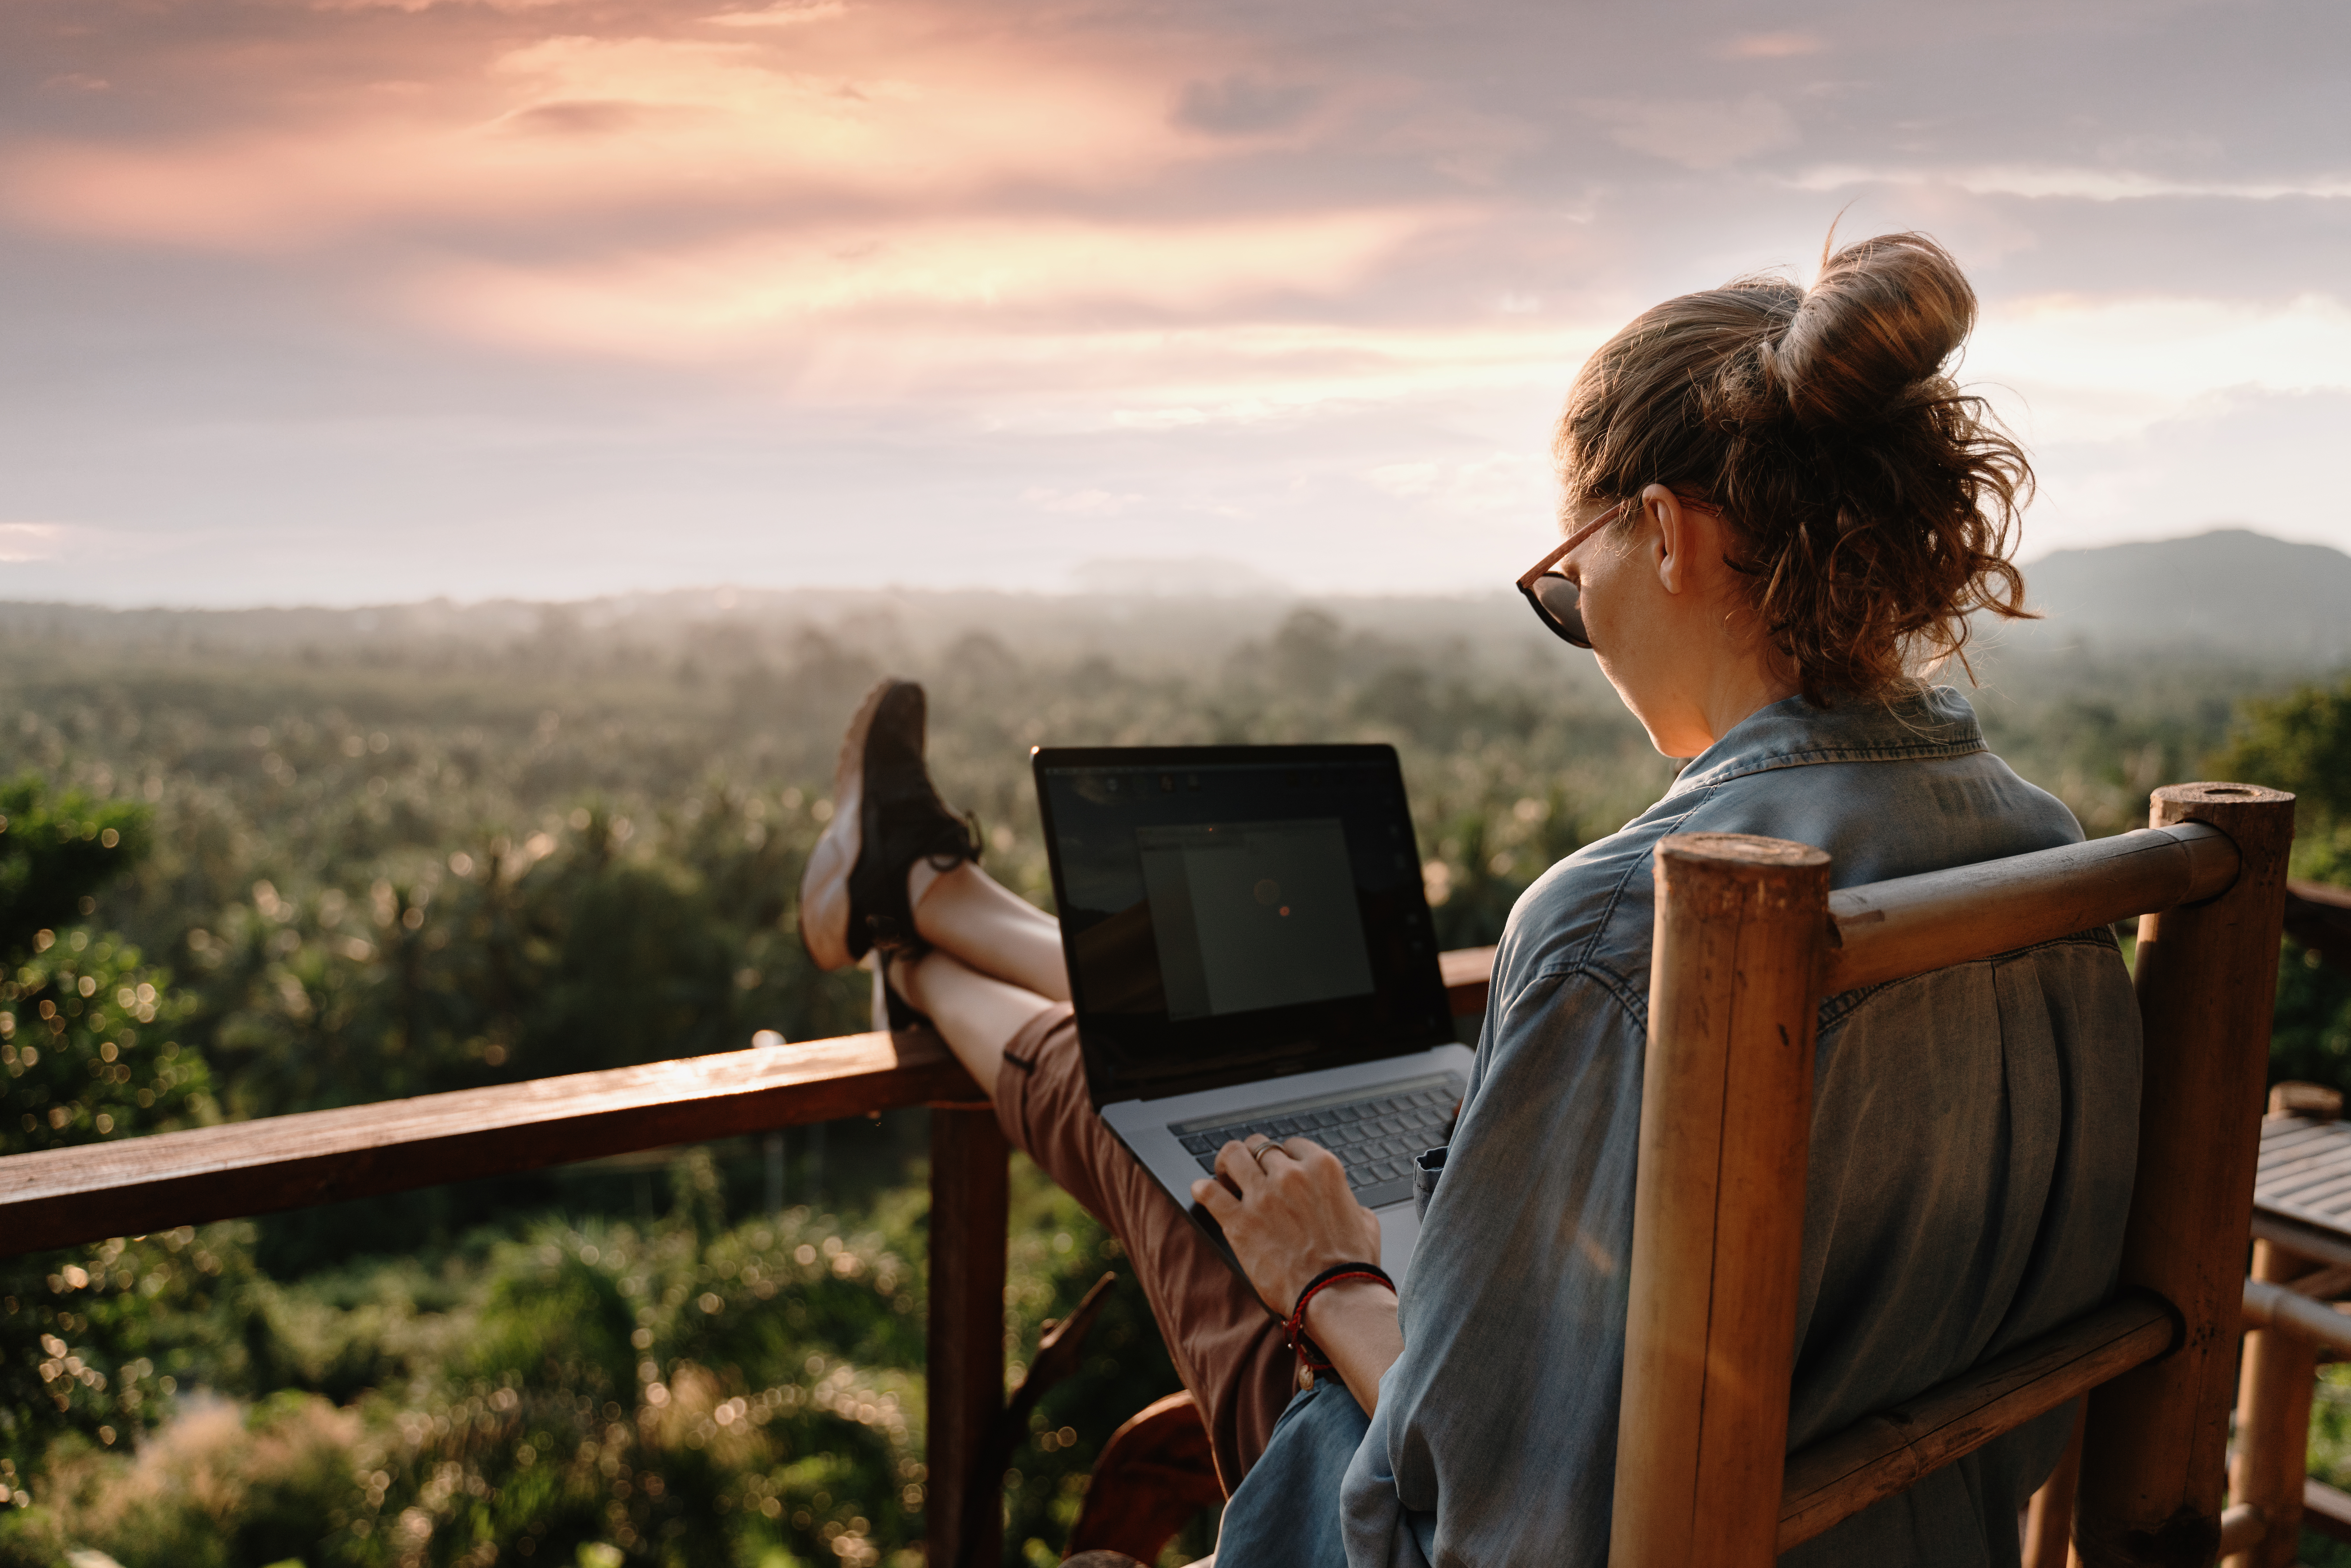 La llamada “workation” permite alargar la estancia en segundas residencias o en sitios de veraneo, programar viajes por más tiempo con la familia o amigos (Shutterstock)